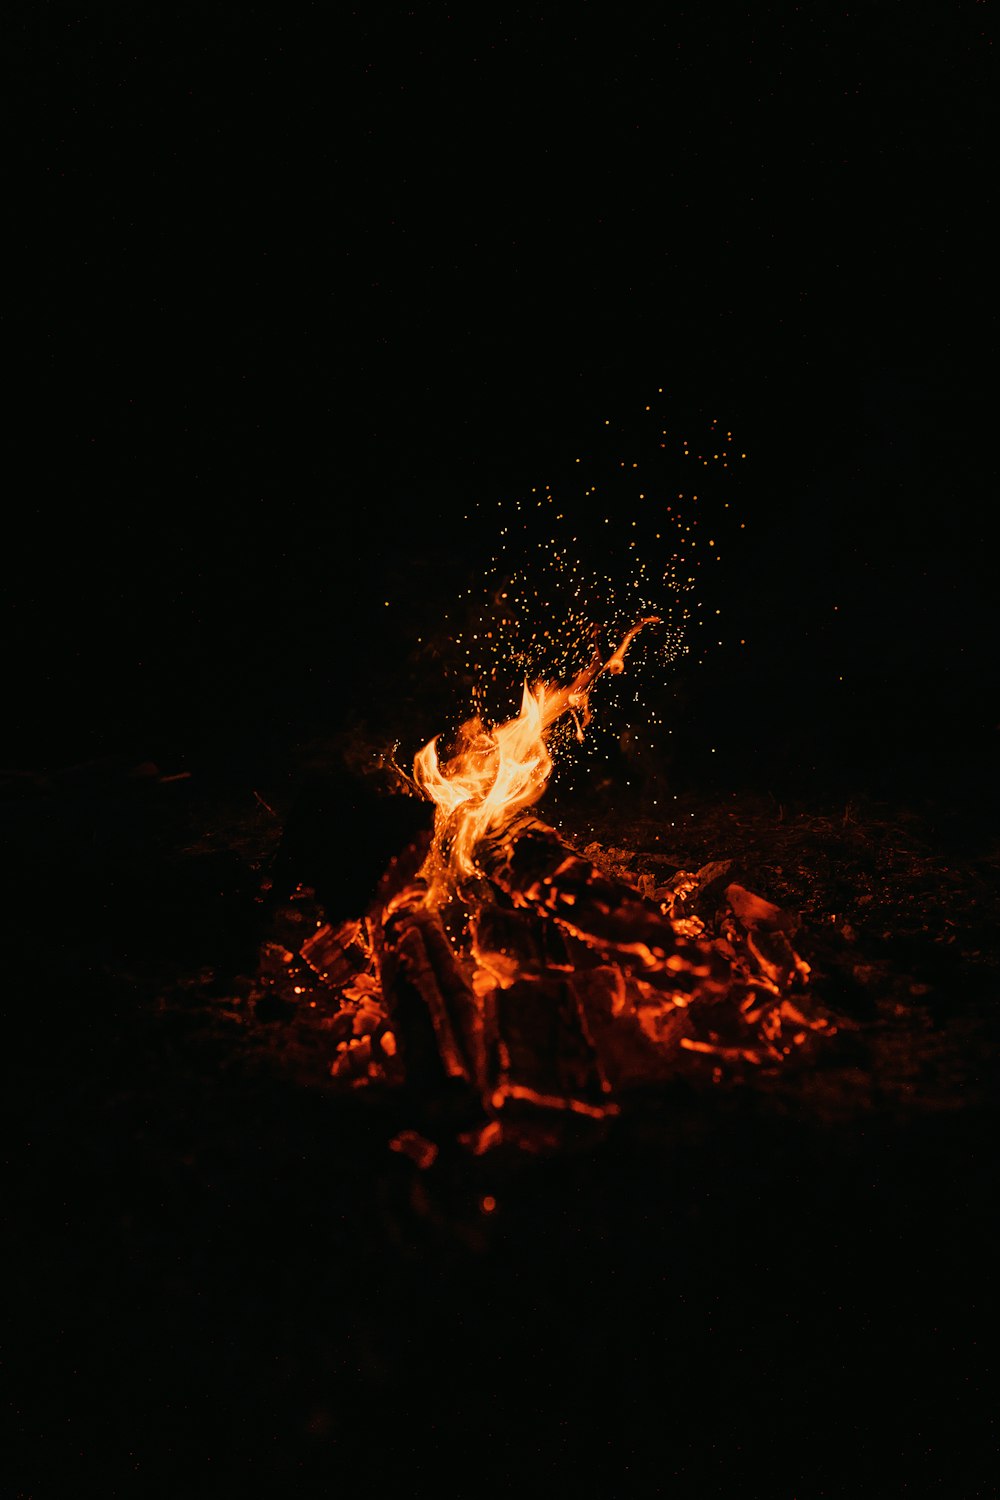 foto da fogueira